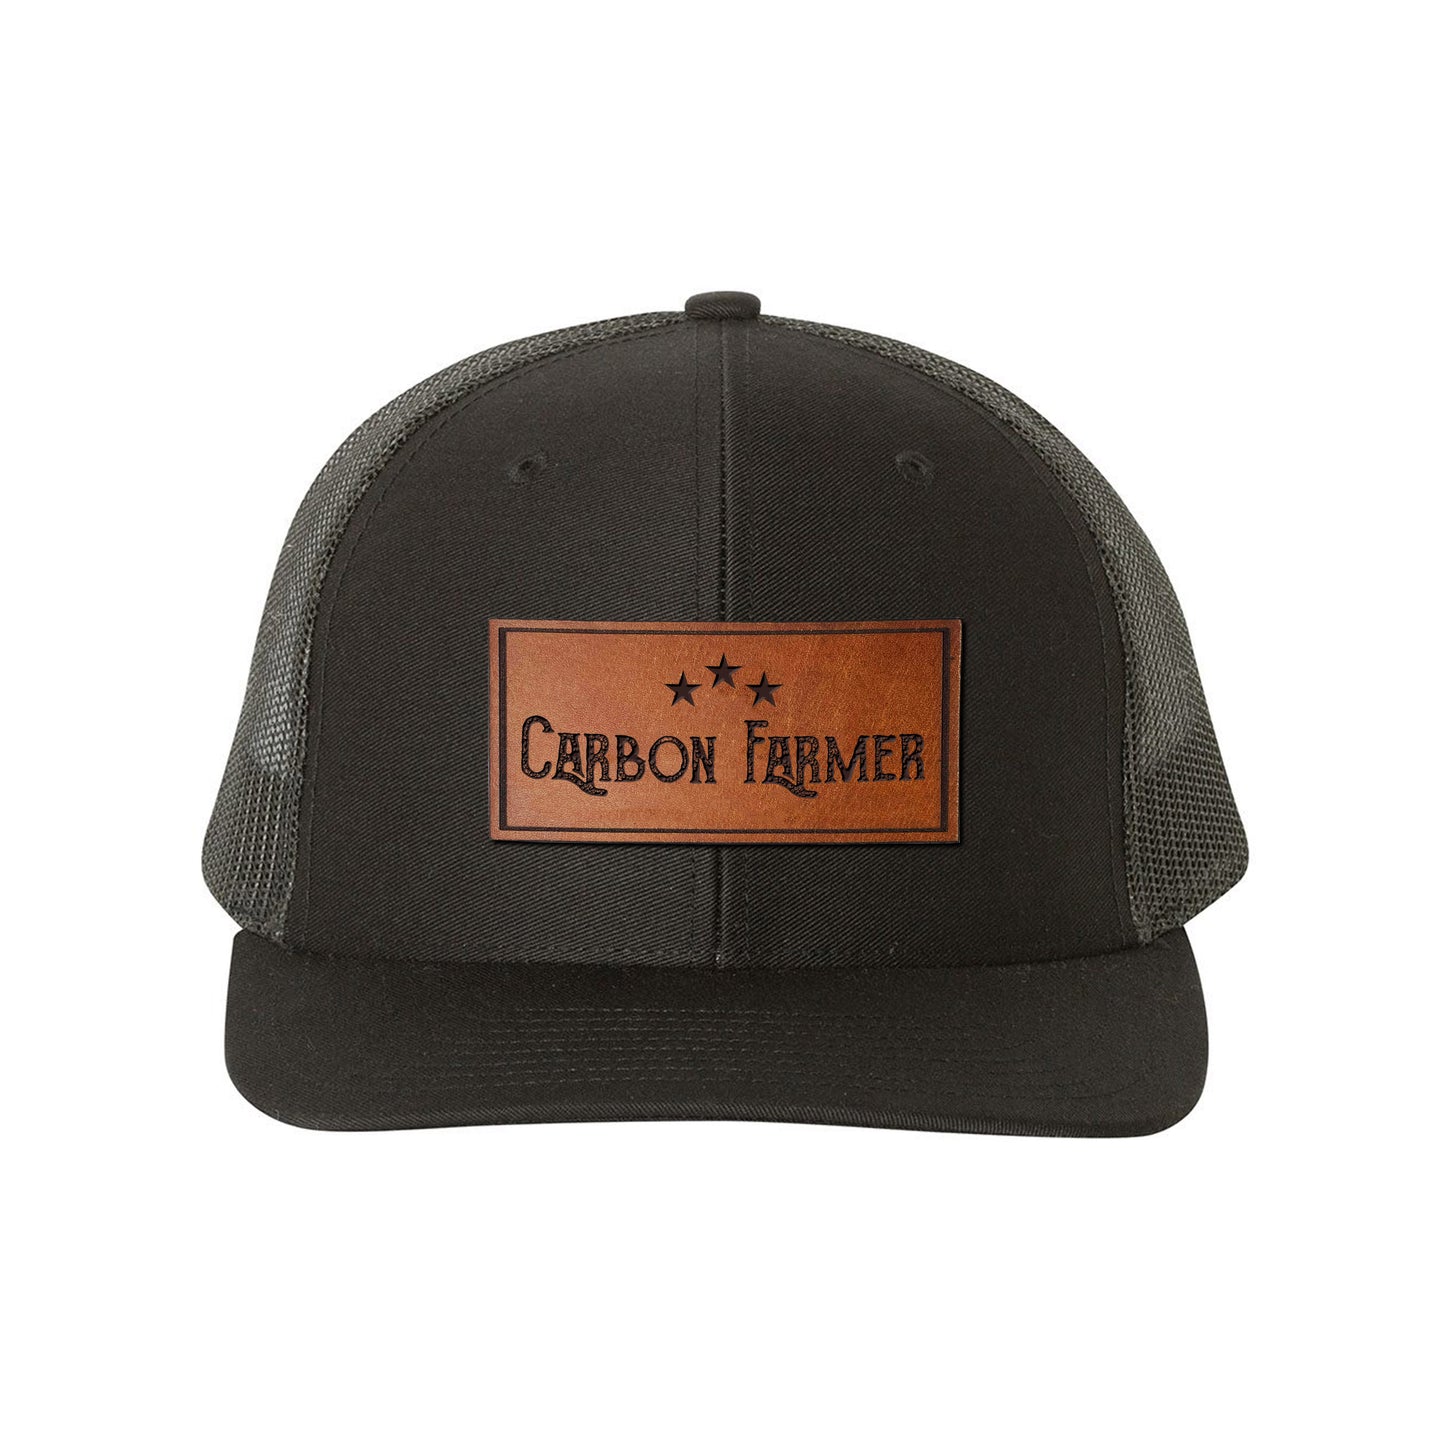 CR Carbon Farmer Leather Snapback